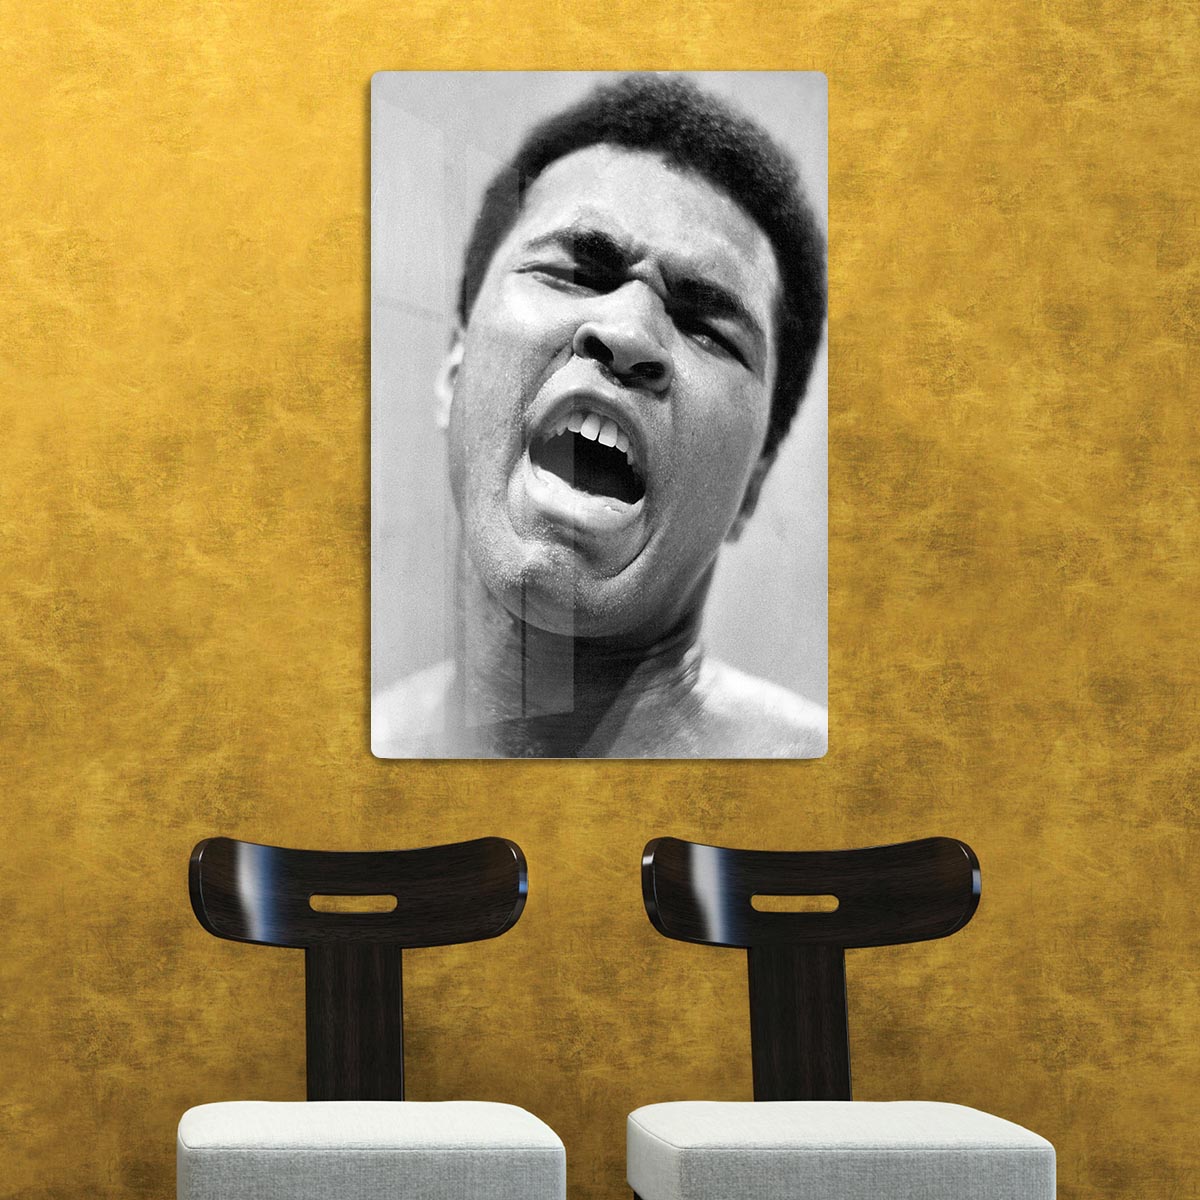 Muhammad Ali shouts HD Metal Print